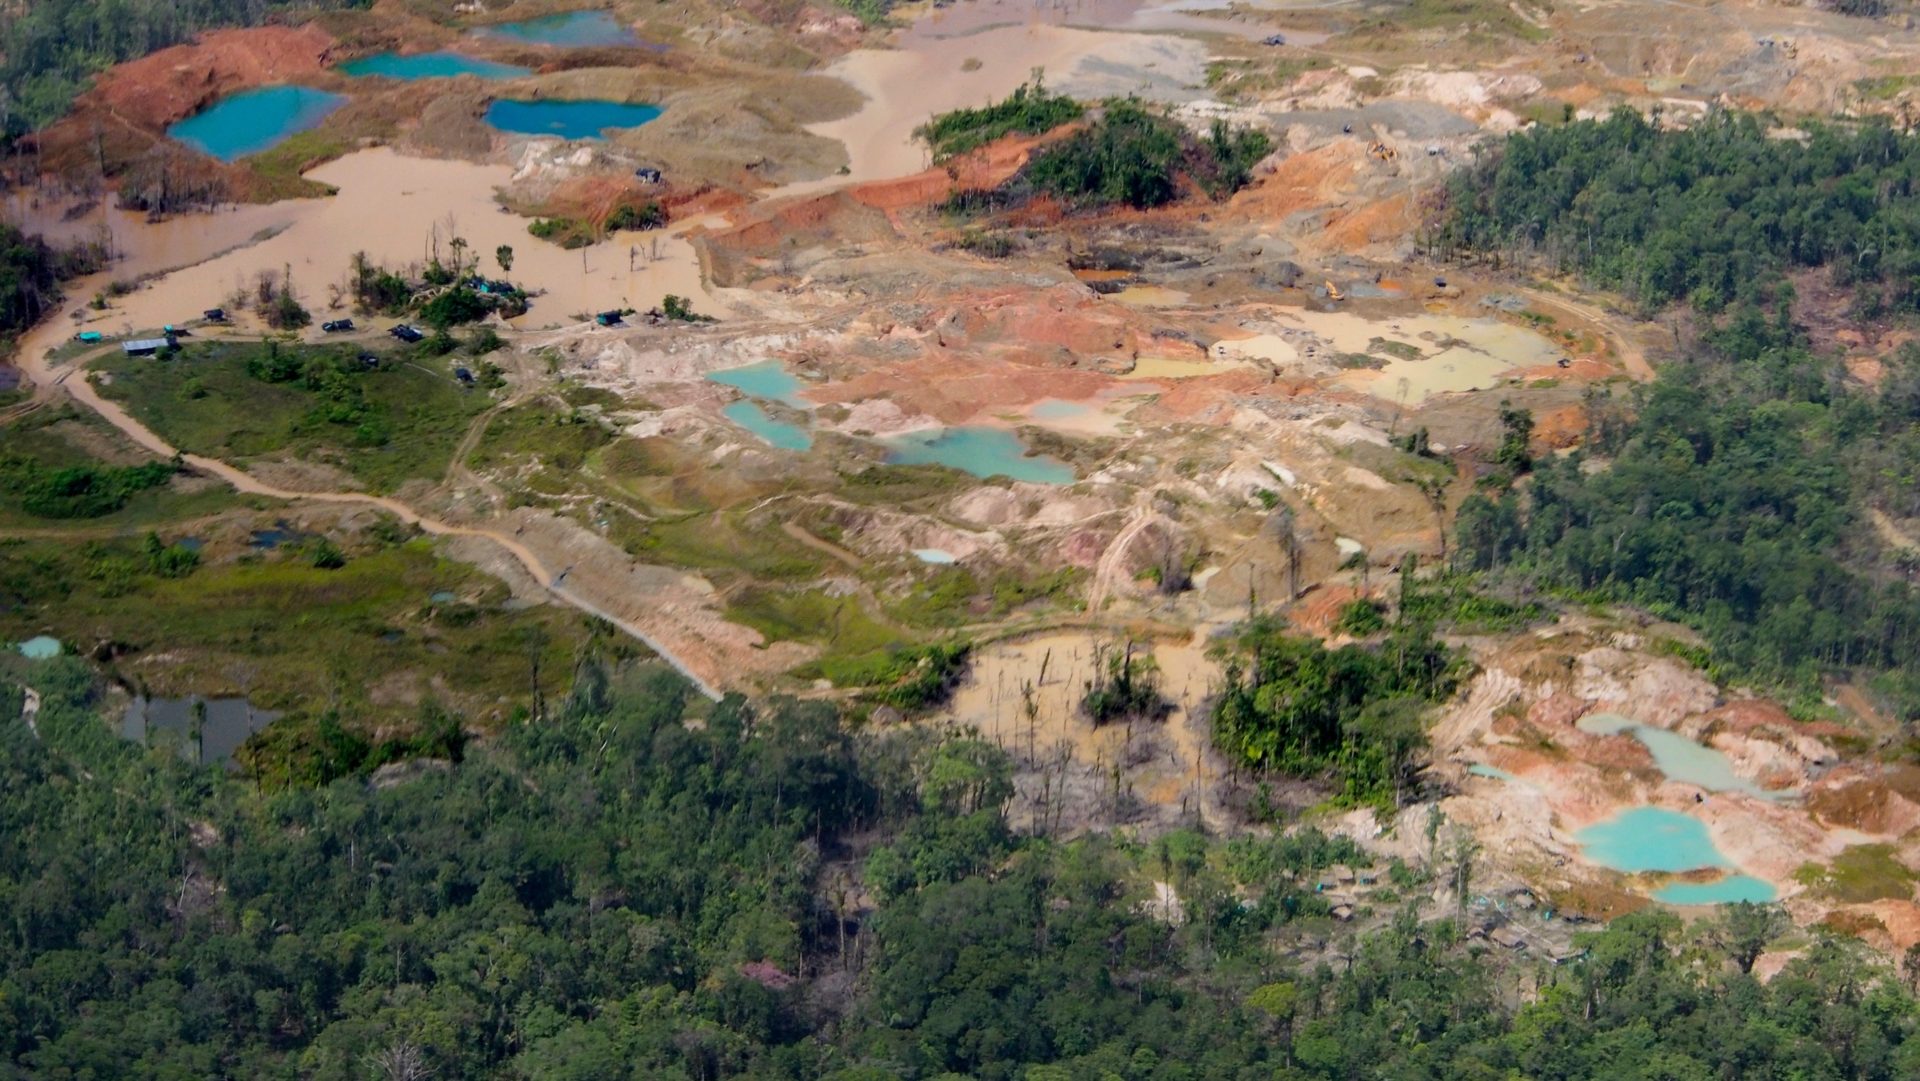 Paesaggio devastato dall'estrazione di oro illegale in Colombia (foto: Steve Cagan)